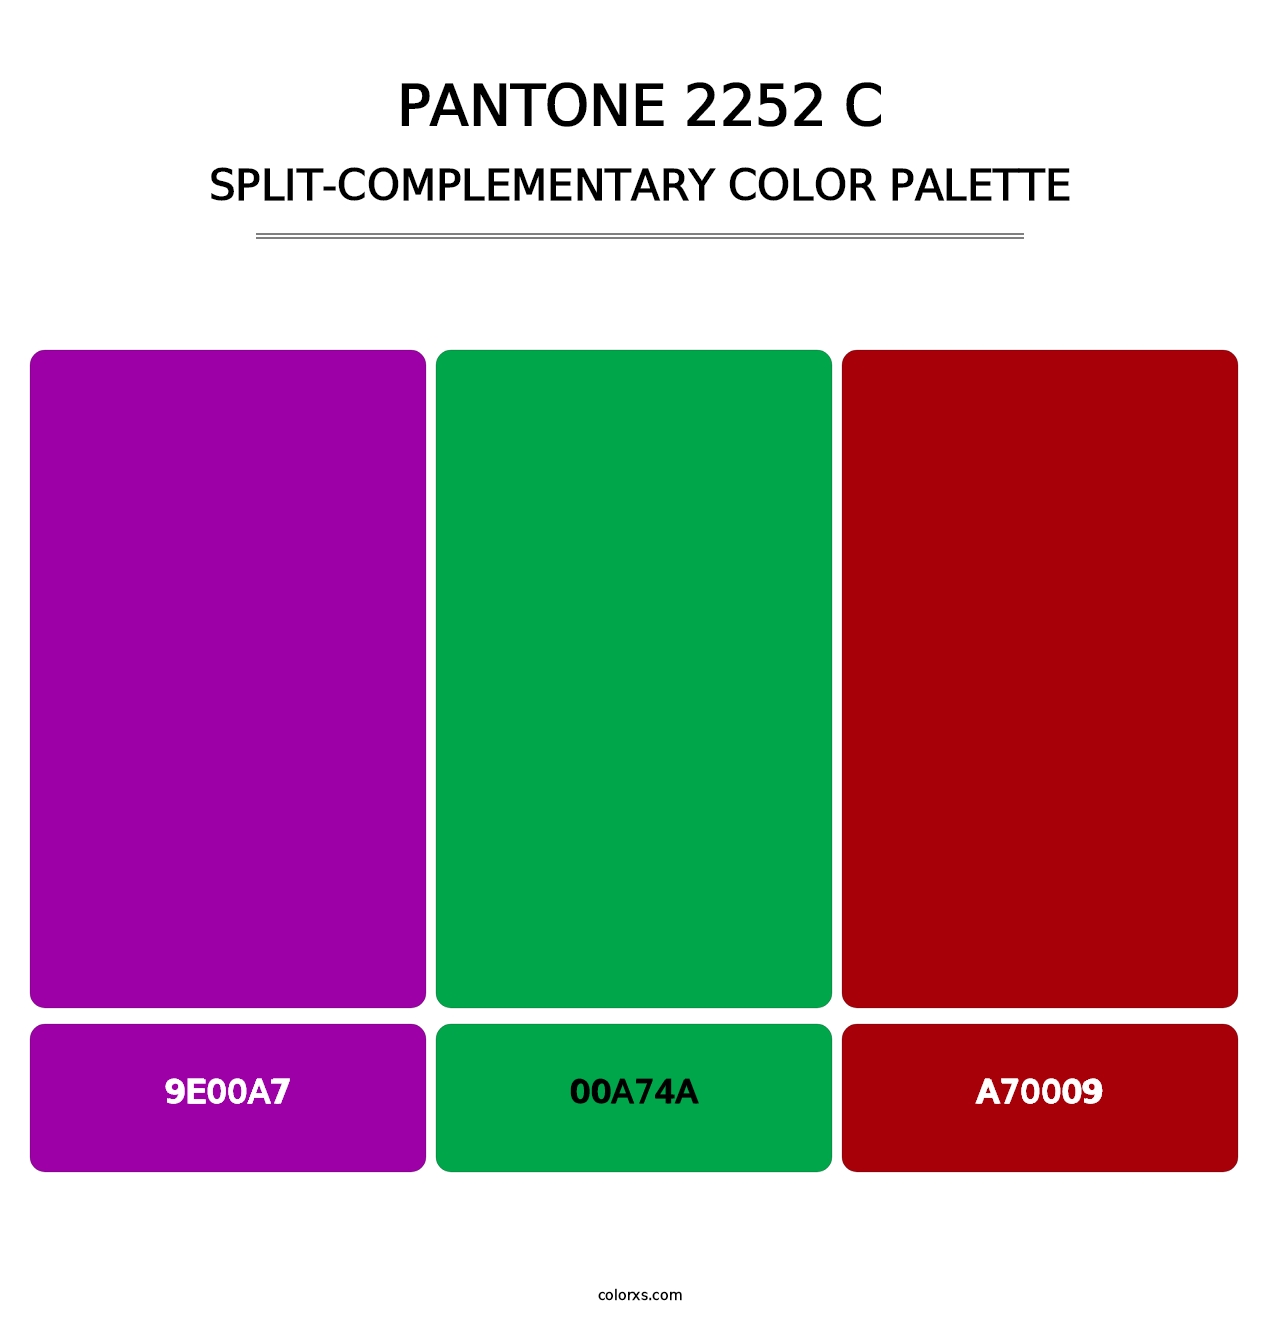 PANTONE 2252 C - Split-Complementary Color Palette